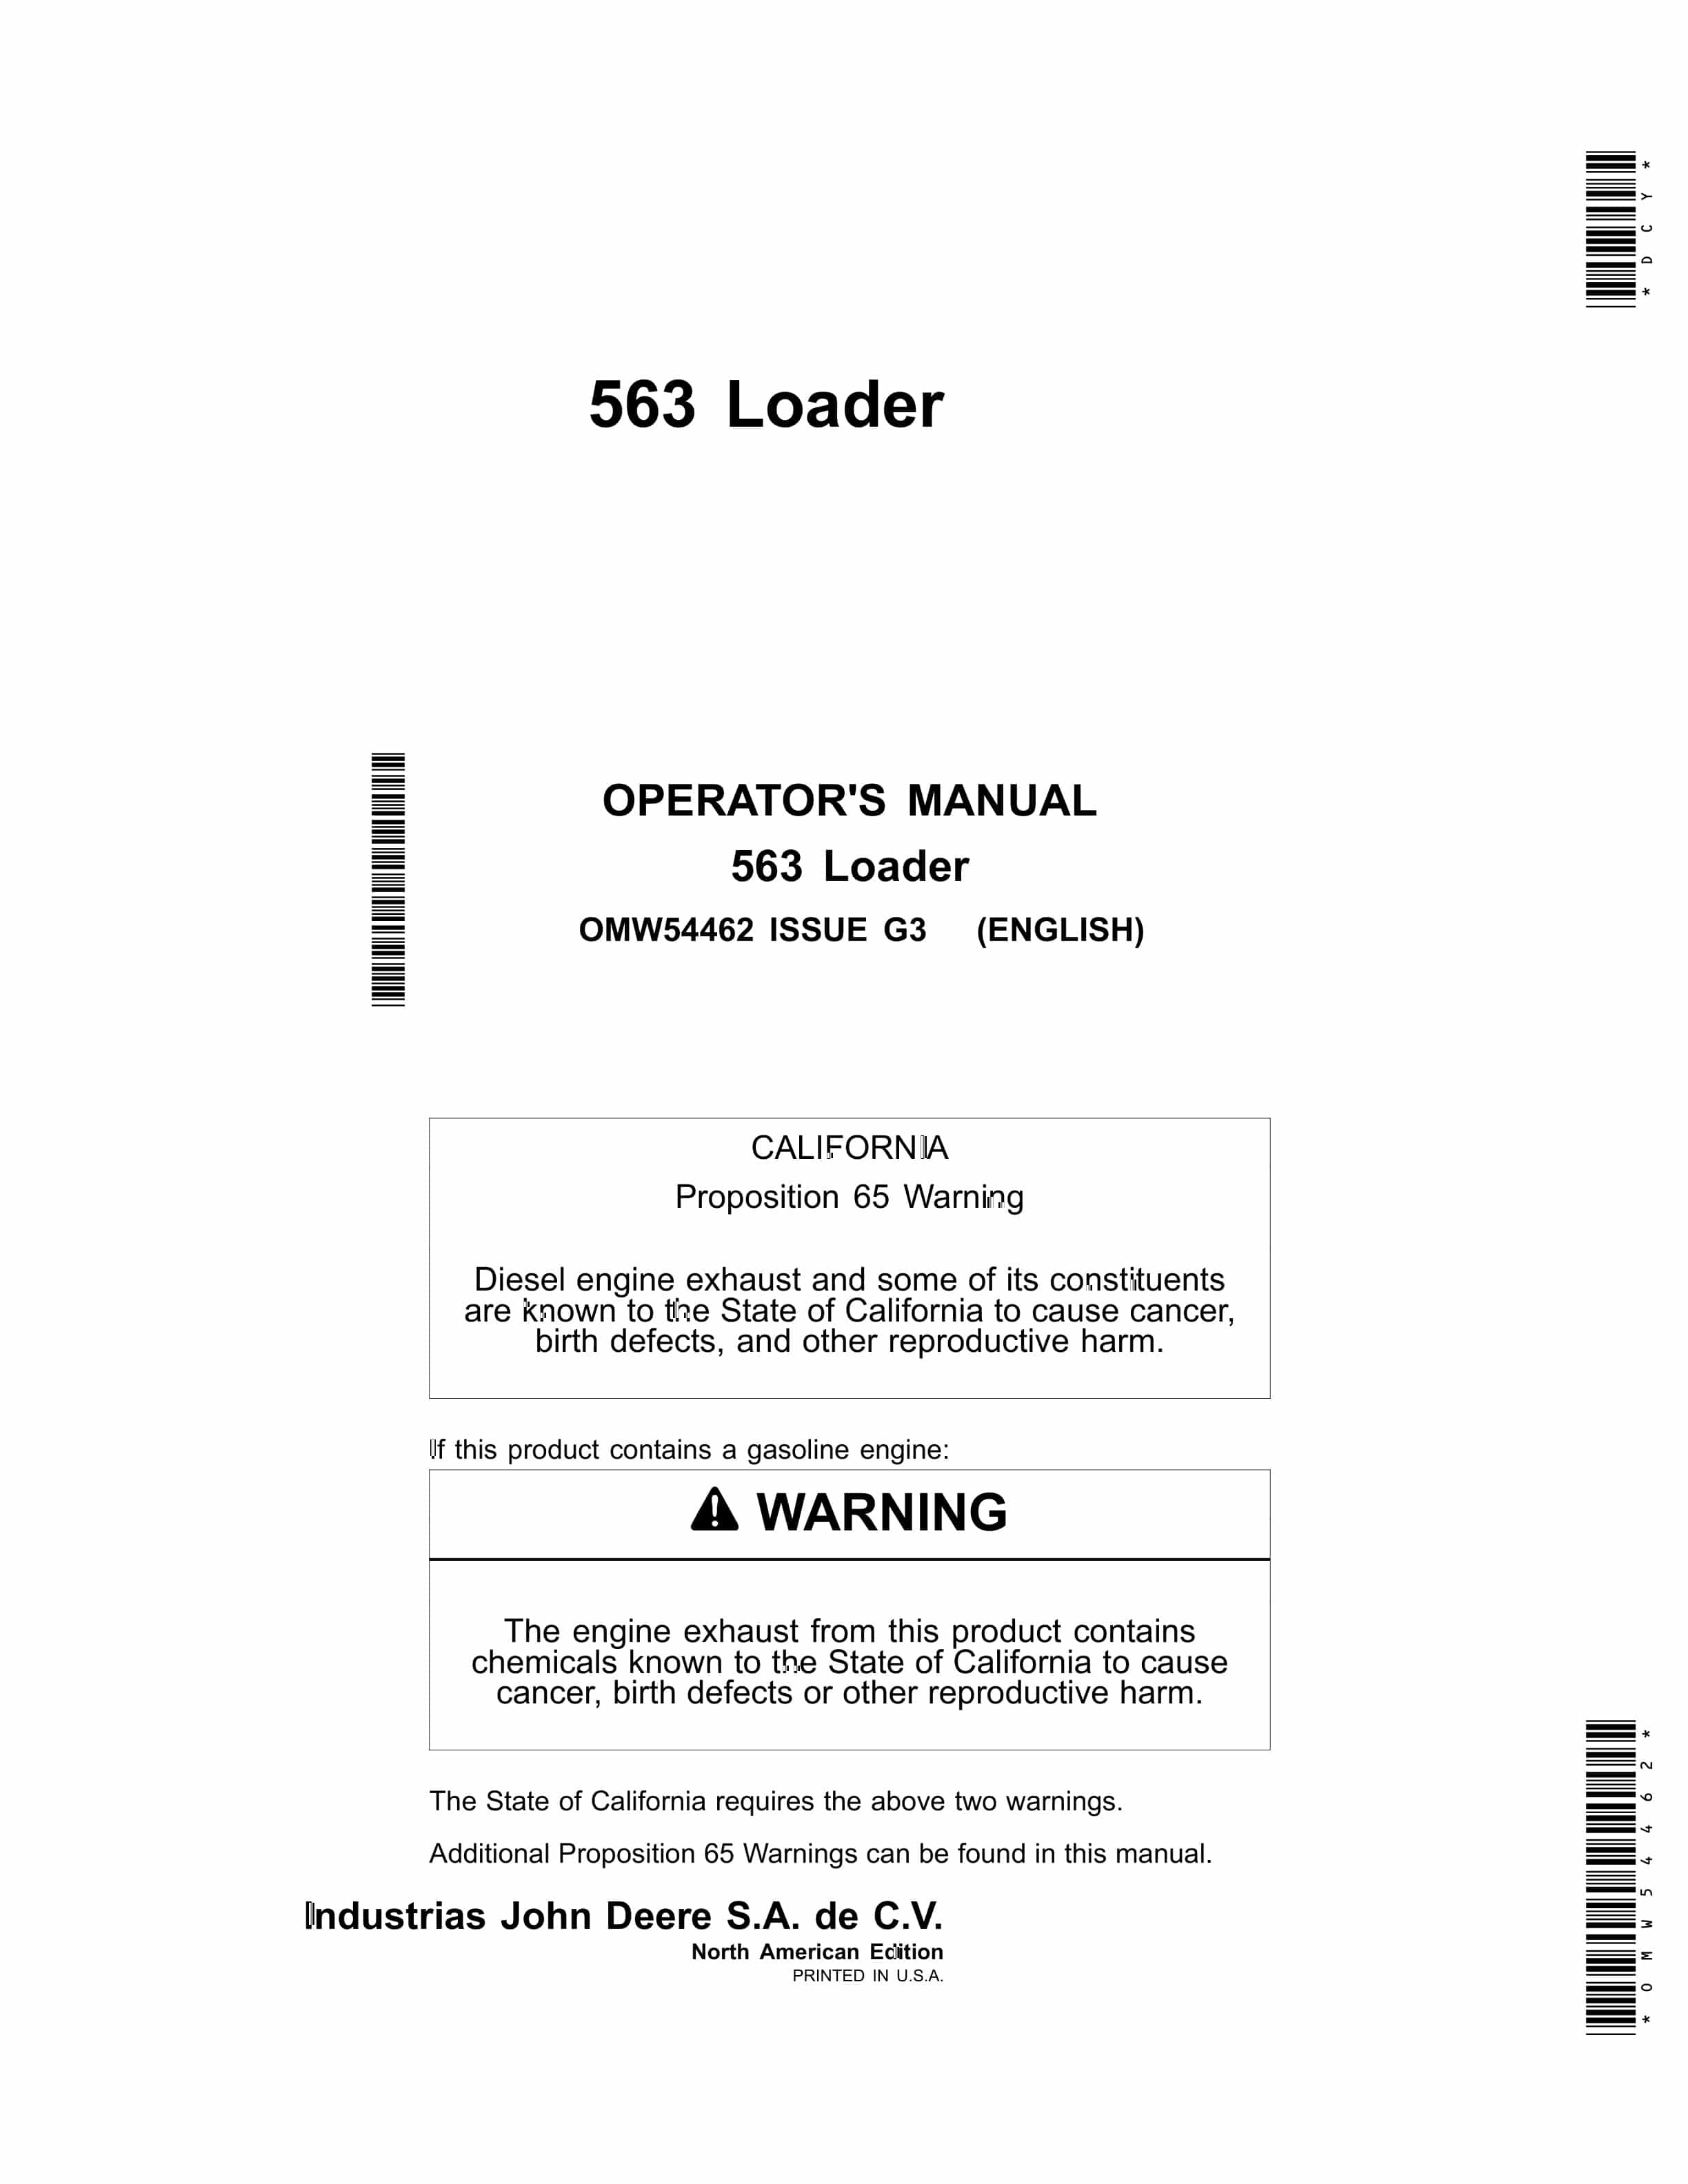 John Deere 563 Loader Operator Manual OMW54462-1